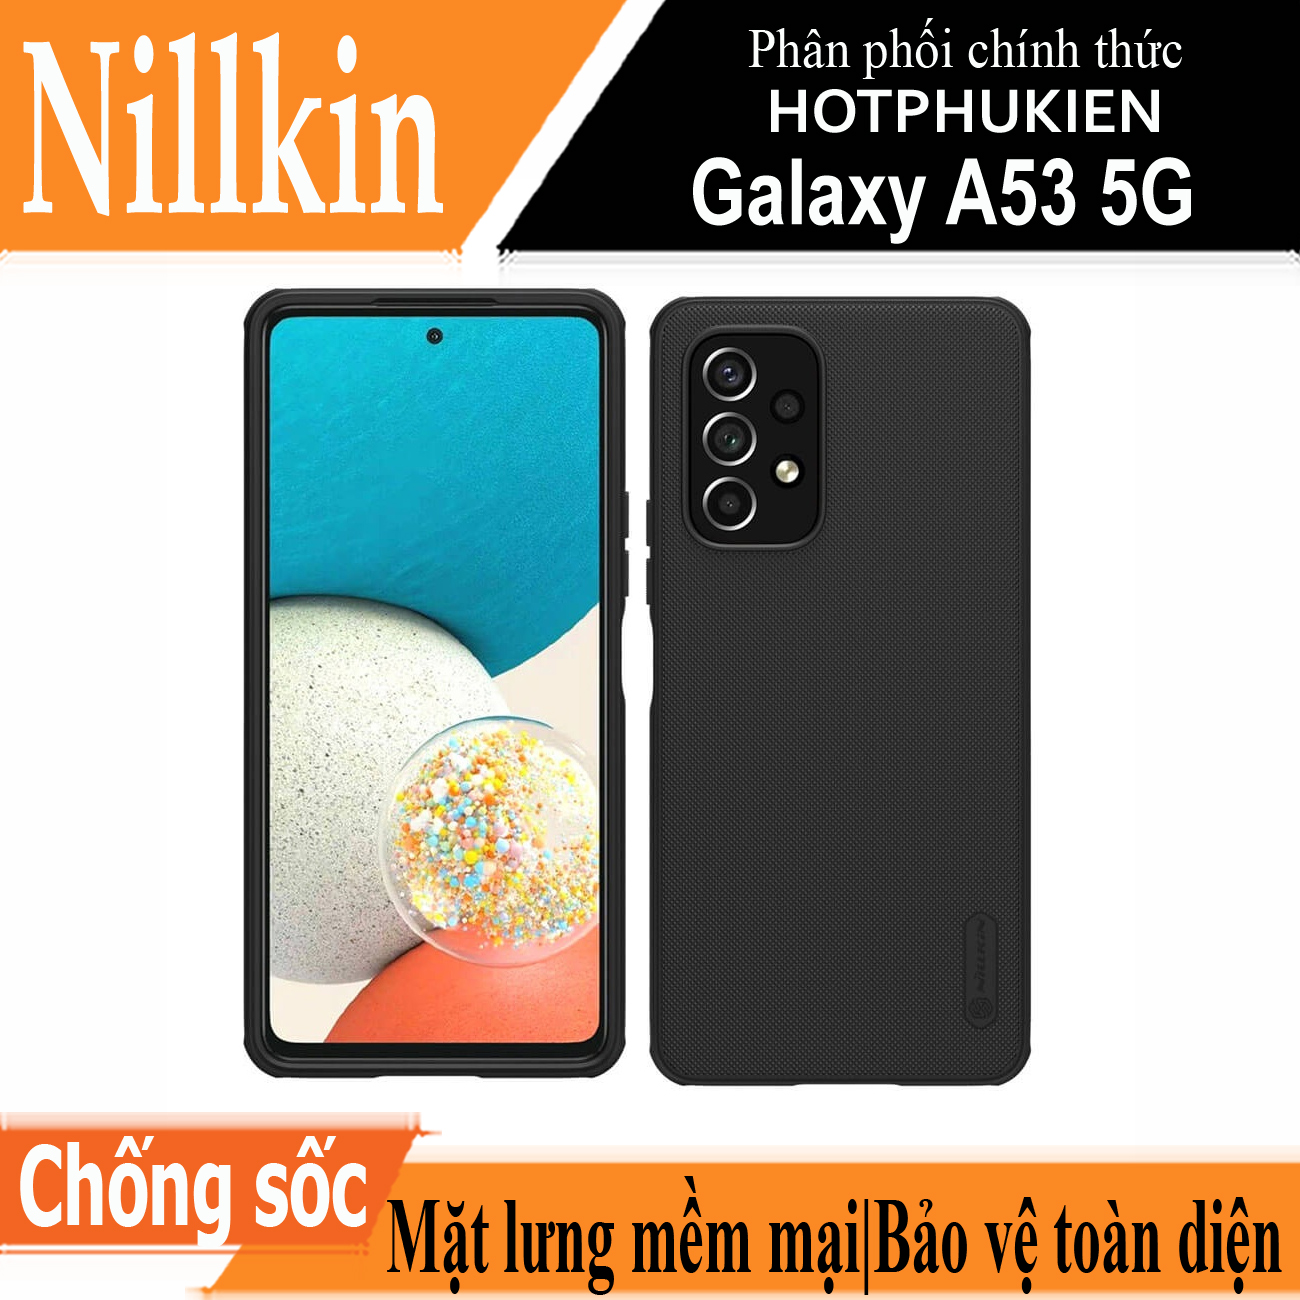 Ốp lưng sần chống sốc cho Samsung Galaxy A53 5G mặt lưng nhám hiệu Nillkin Super Frosted Shield Pro cho khả năng chống sốc cực tốt, chất liệu cao cấp, mặt lưng nhám sang trọng - hàng nhập khẩu